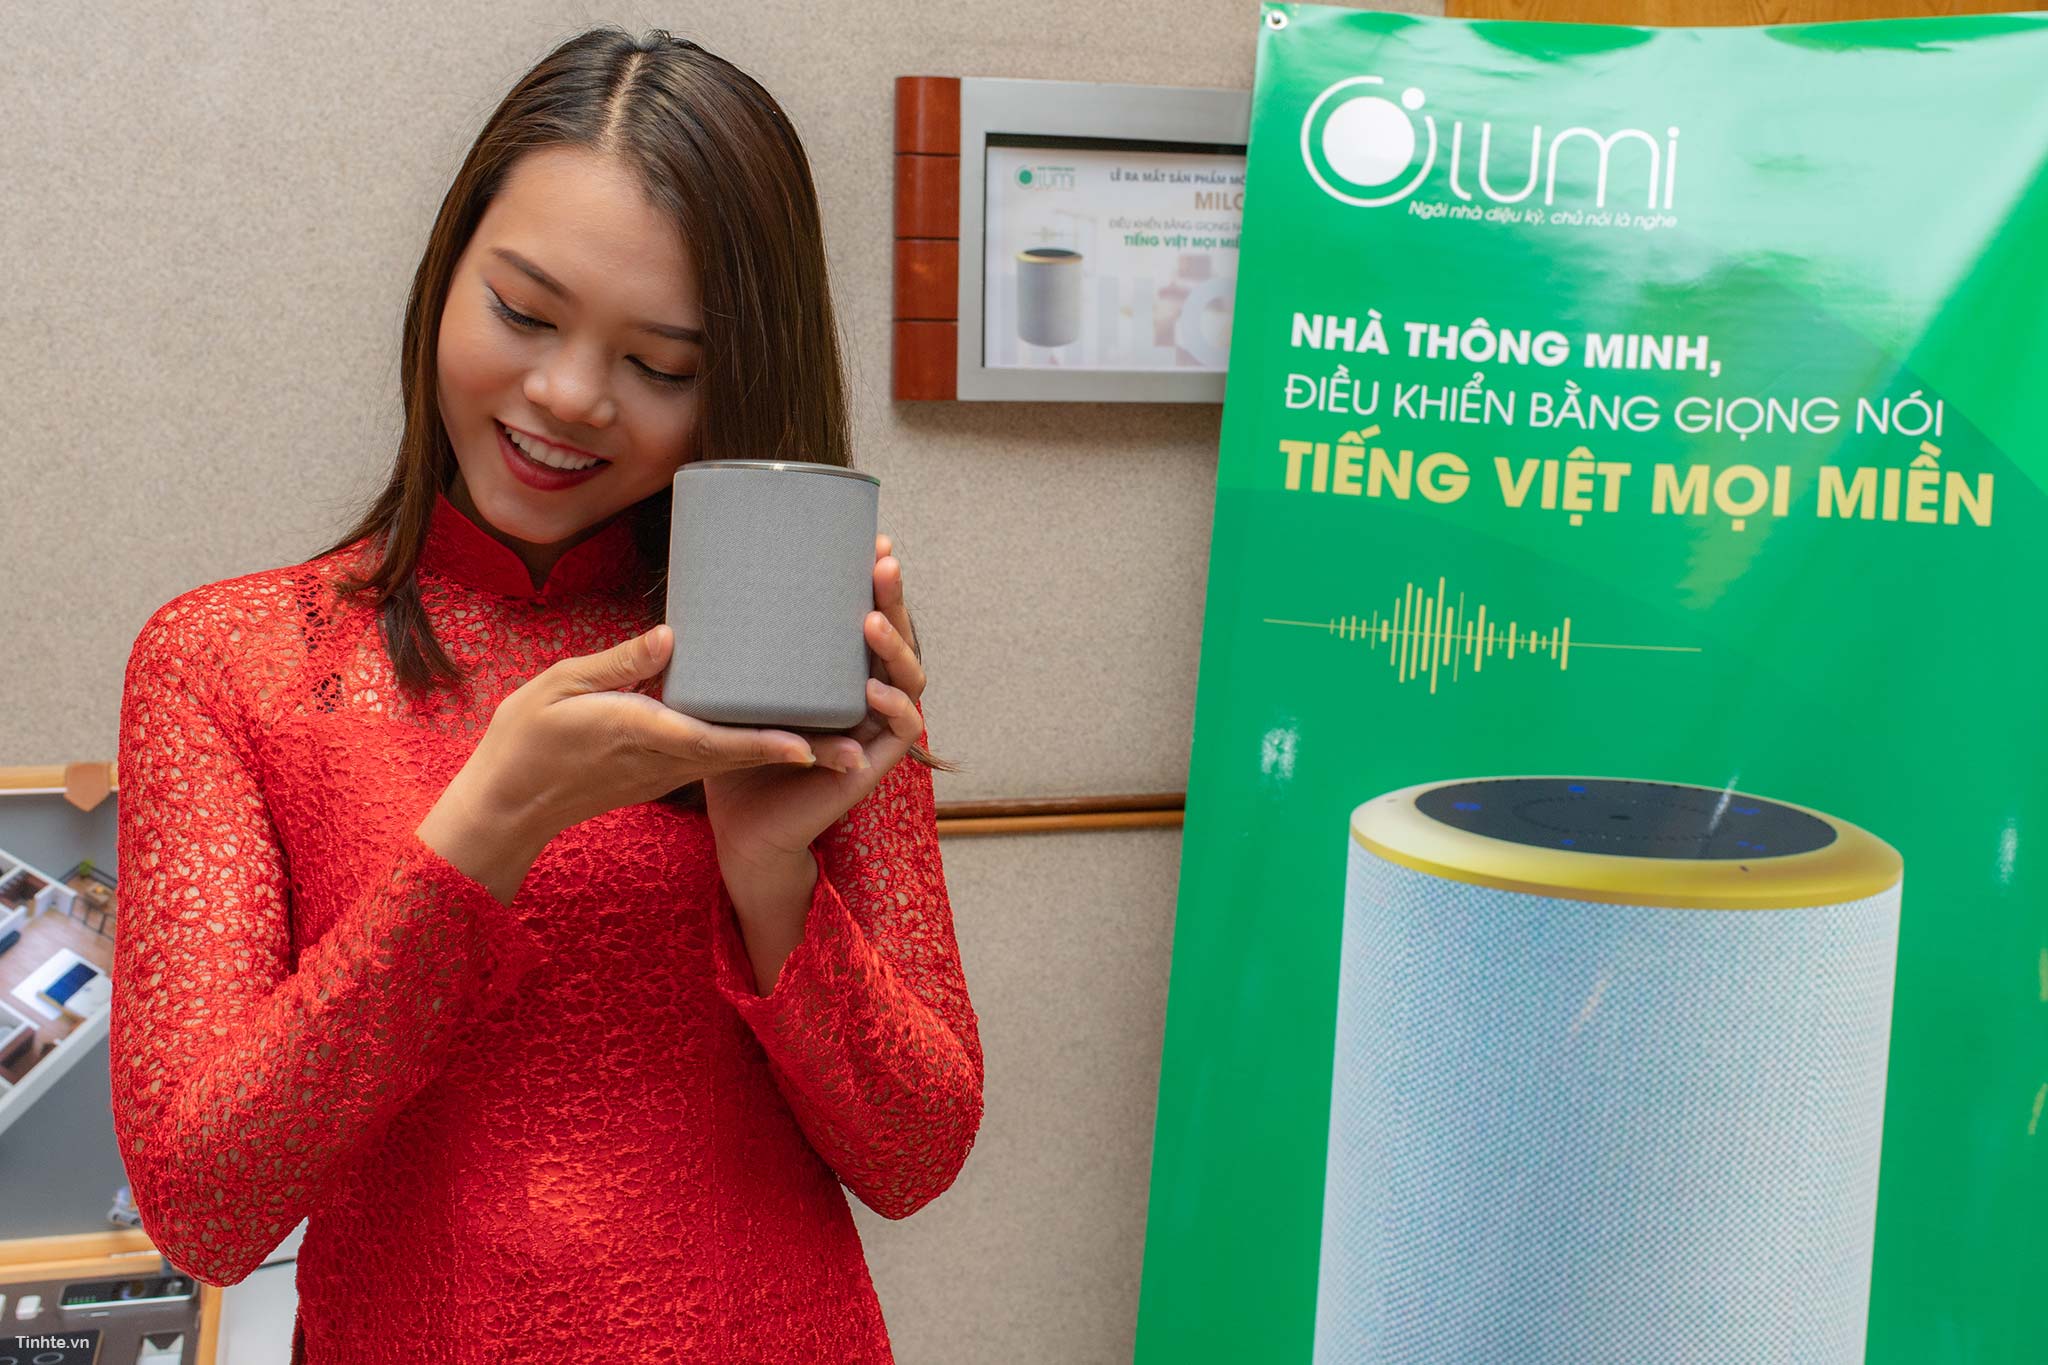 Loa điều khiển nhà thông minh bằng Tiếng Việt - Milo là một sản phẩm mới đầy hứa hẹn cho những người yêu thích công nghệ. Với khả năng điều khiển các thiết bị nhà thông minh bằng giọng nói tiếng Việt, Milo giúp việc điều khiển nhà thông minh của bạn trở nên dễ dàng và thuận tiện hơn bao giờ hết.